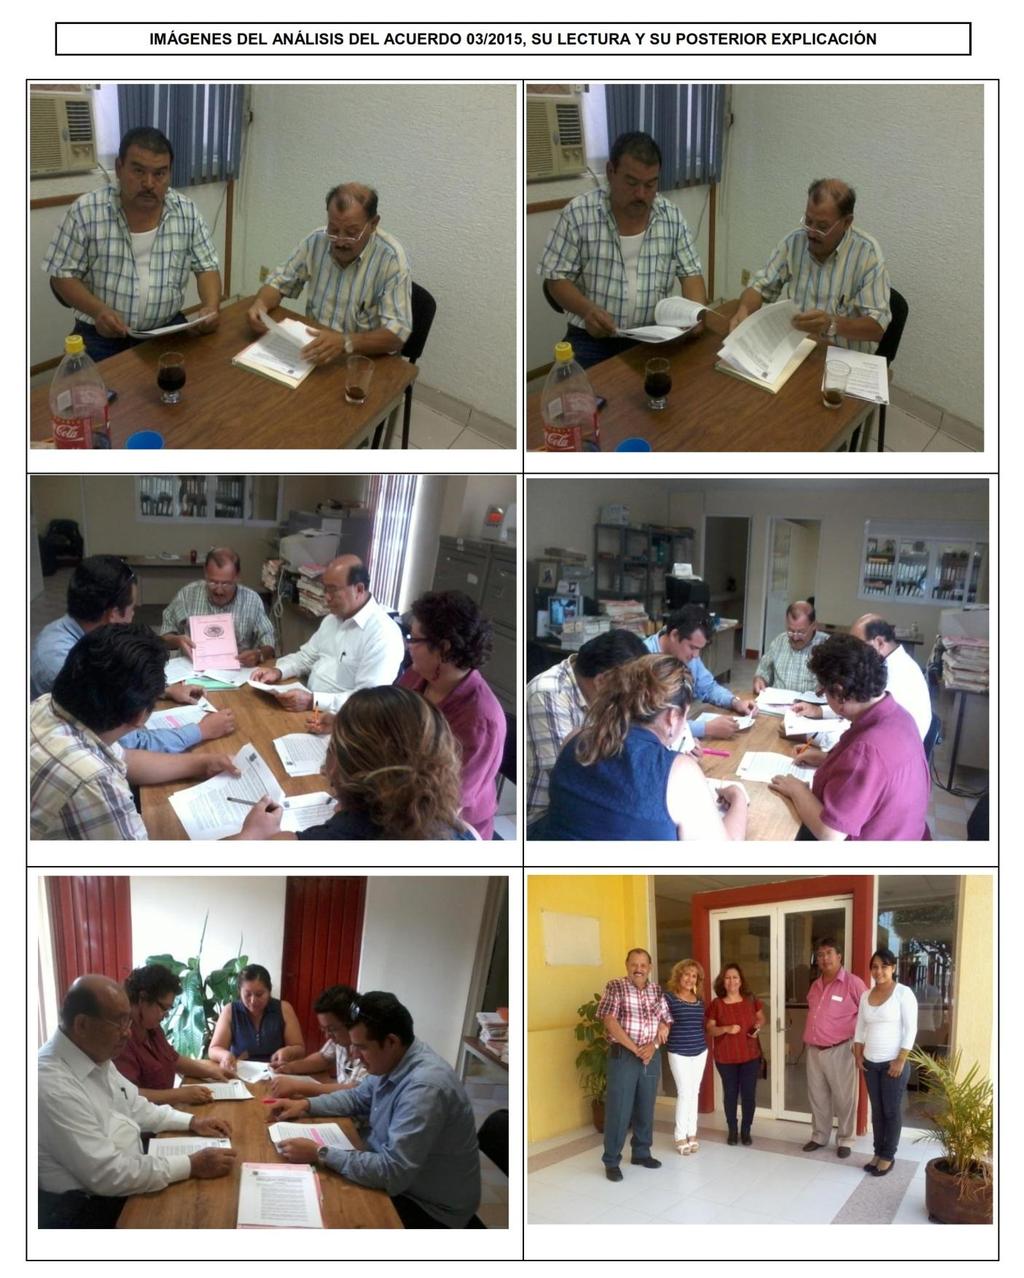 En la semana comprendida entre el 20 al 23 de junio se impartieron pláticas interactivas con personal adscrito en los Archivos Judiciales Regionales de Arriaga, Tapachula, Comitán y Las Casas para